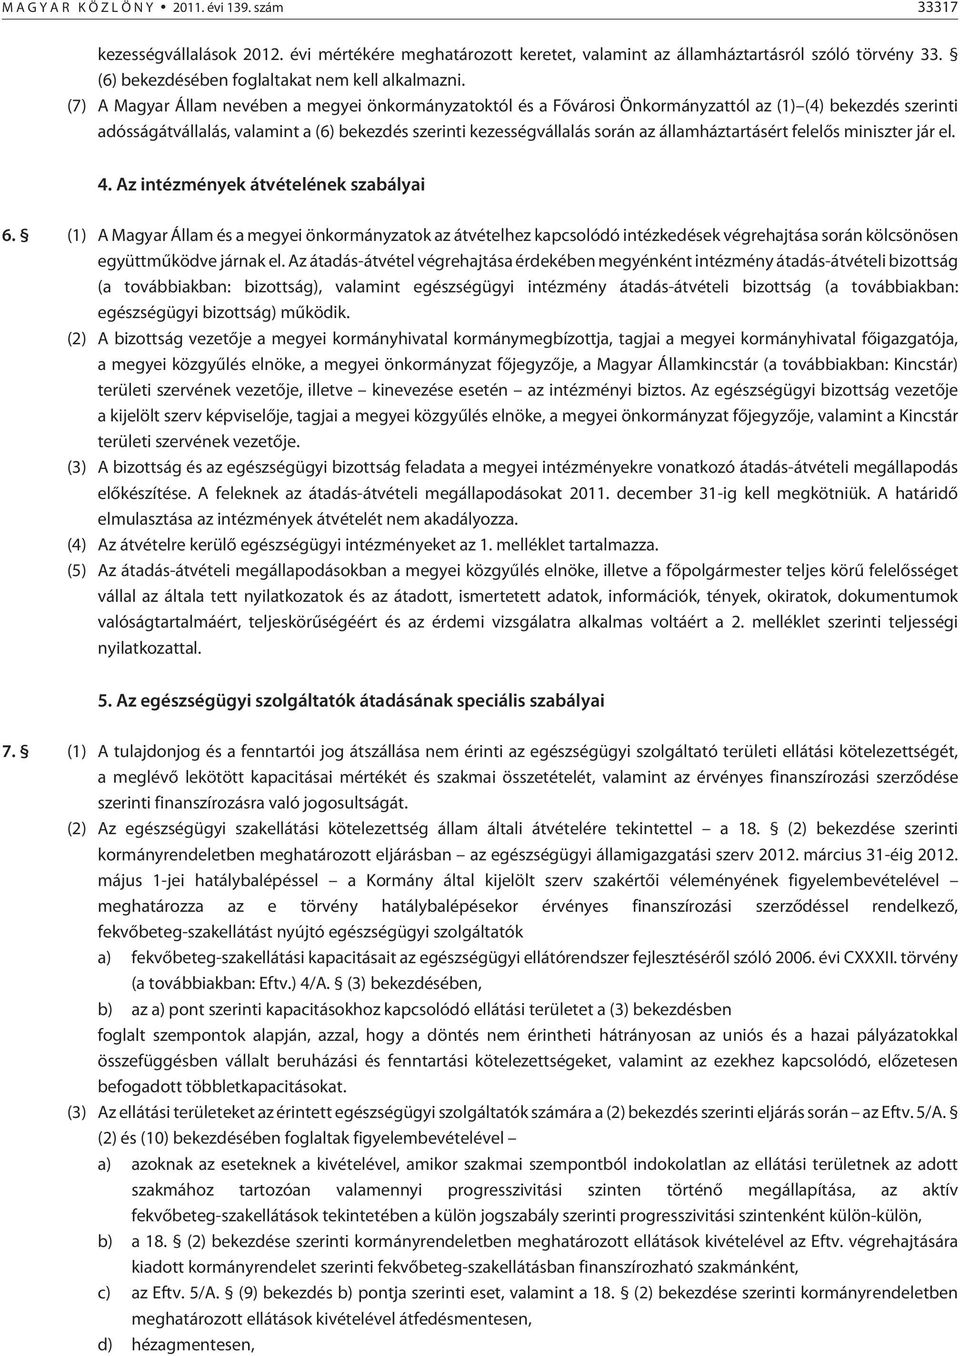 (7) A Magyar Állam nevében a megyei önkormányzatoktól és a Fõvárosi Önkormányzattól az (1) (4) bekezdés szerinti adósságátvállalás, valamint a (6) bekezdés szerinti kezességvállalás során az